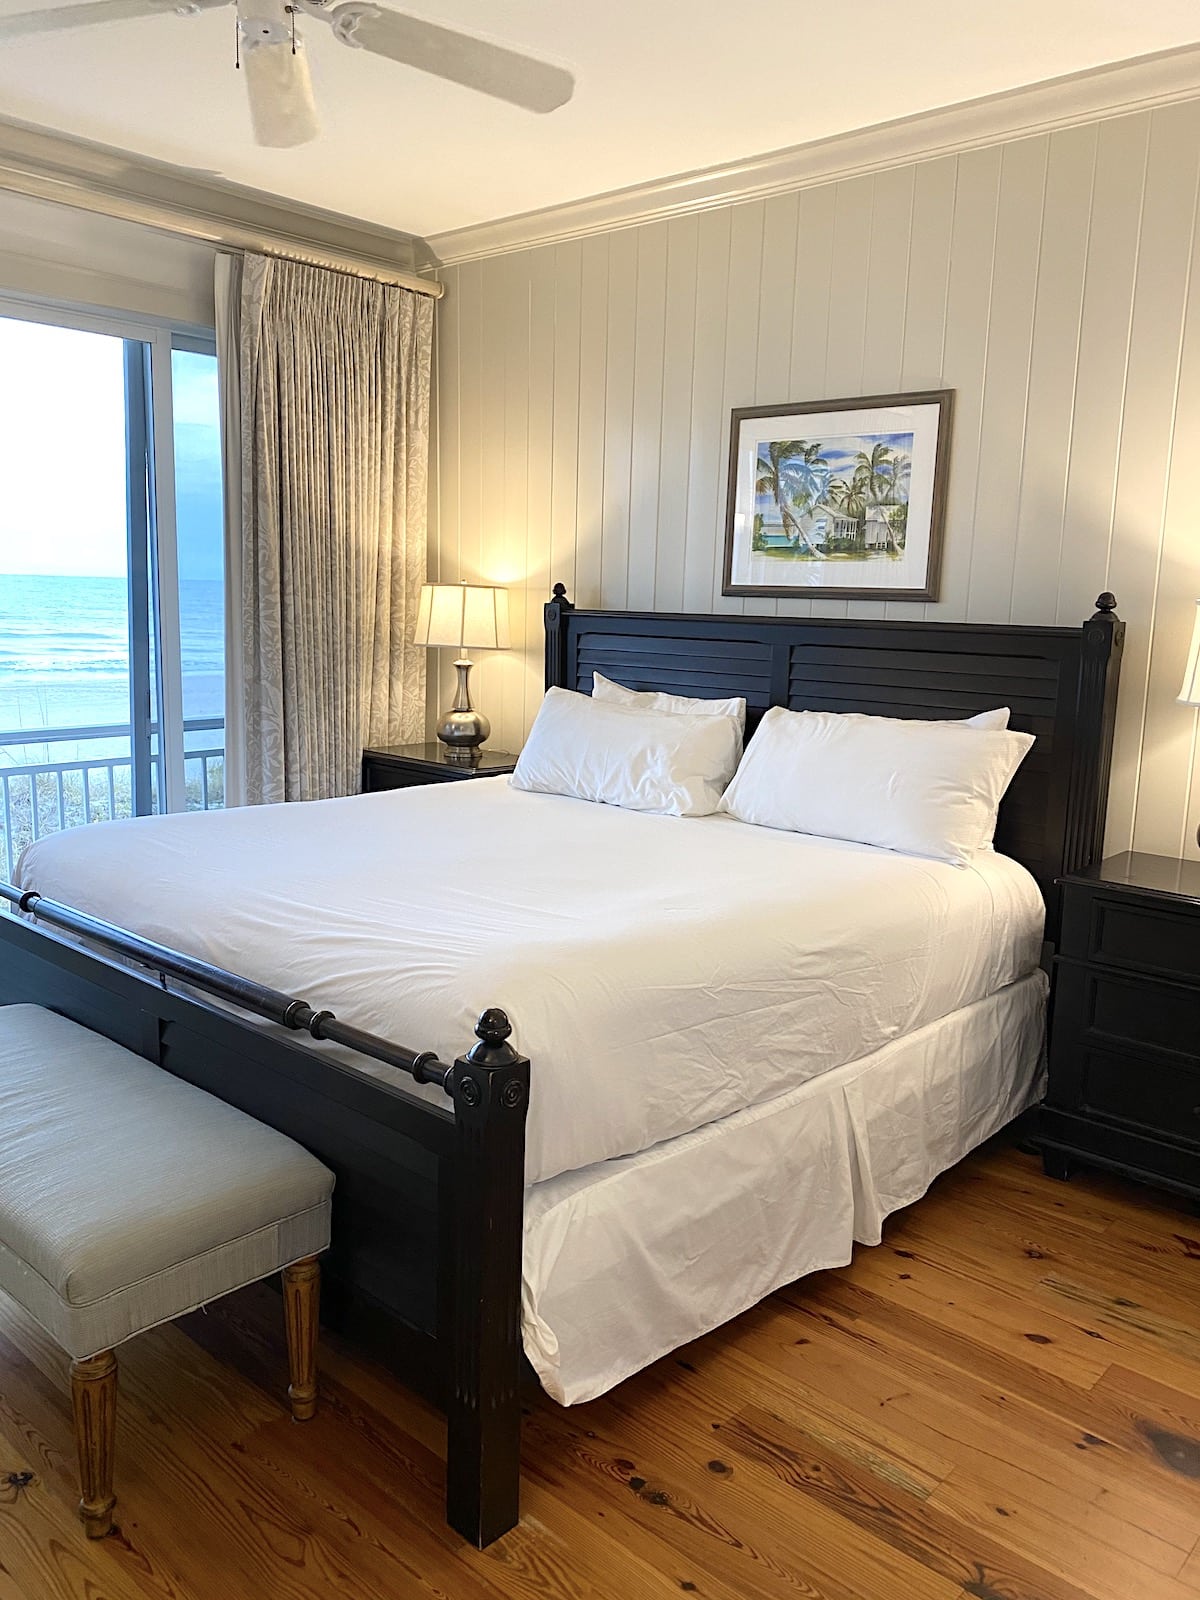 Master bedroom at Mainsail Beach Inn Anna Maria Island Beaches.